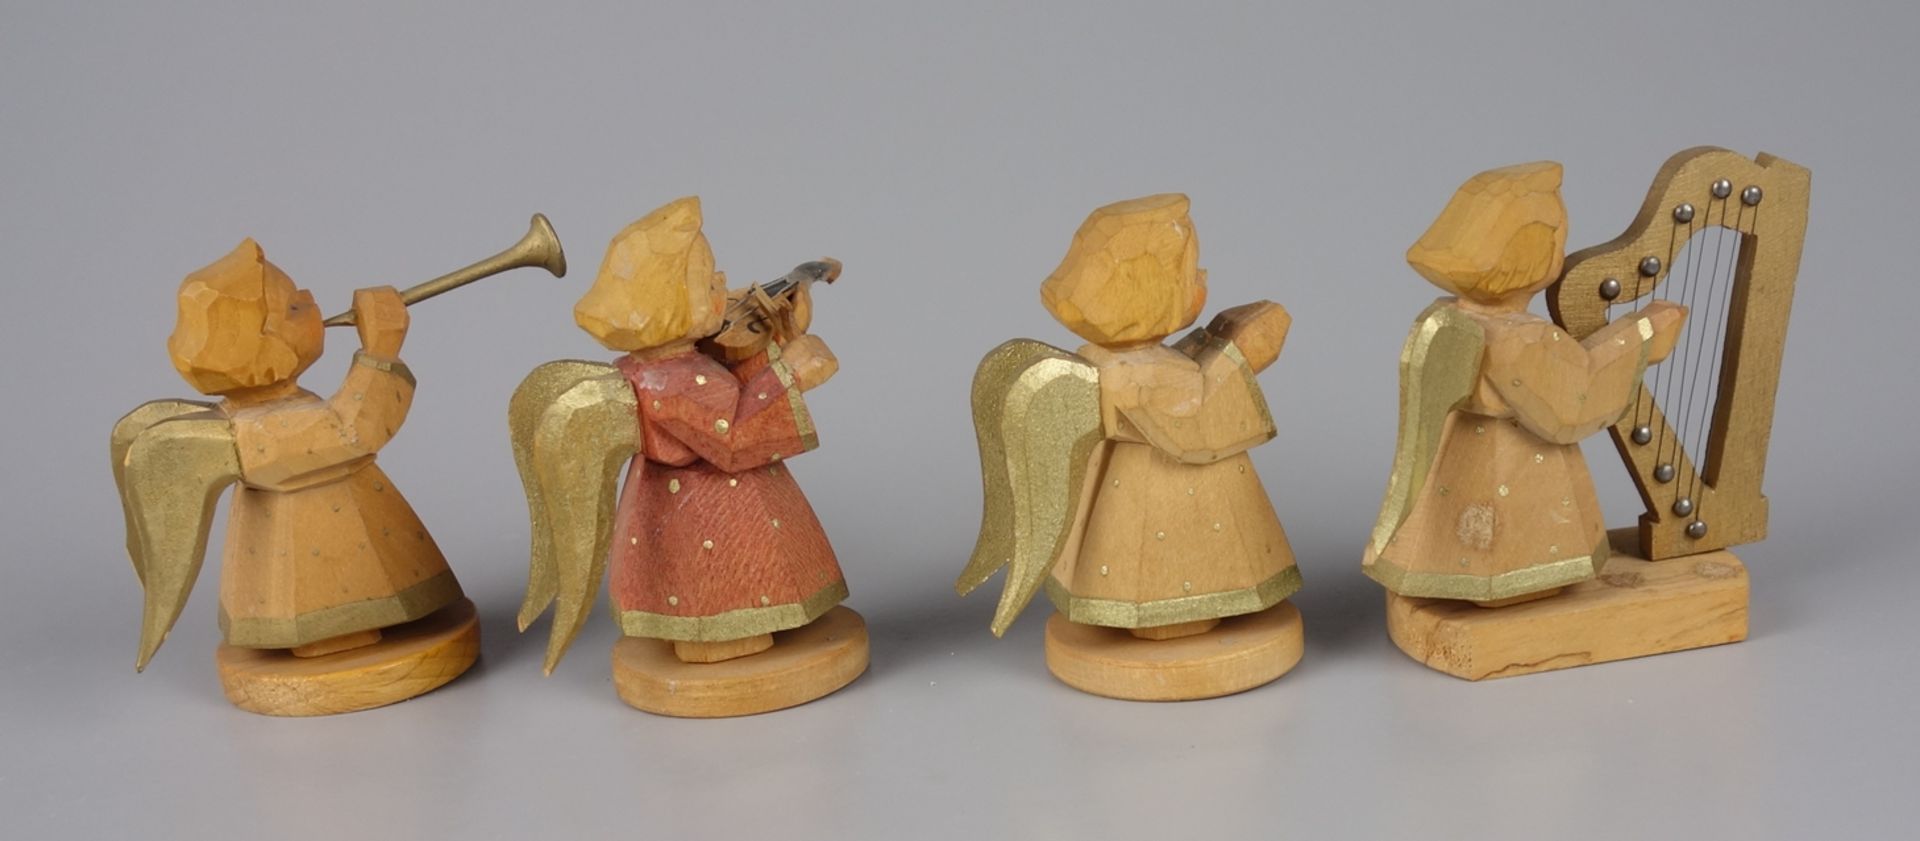 4 Engel aus Engelkapelle, Schumann & Wagner, Grünhainichen, Erzgebirge, 1.Hälfte 20.Jh. - Bild 2 aus 3